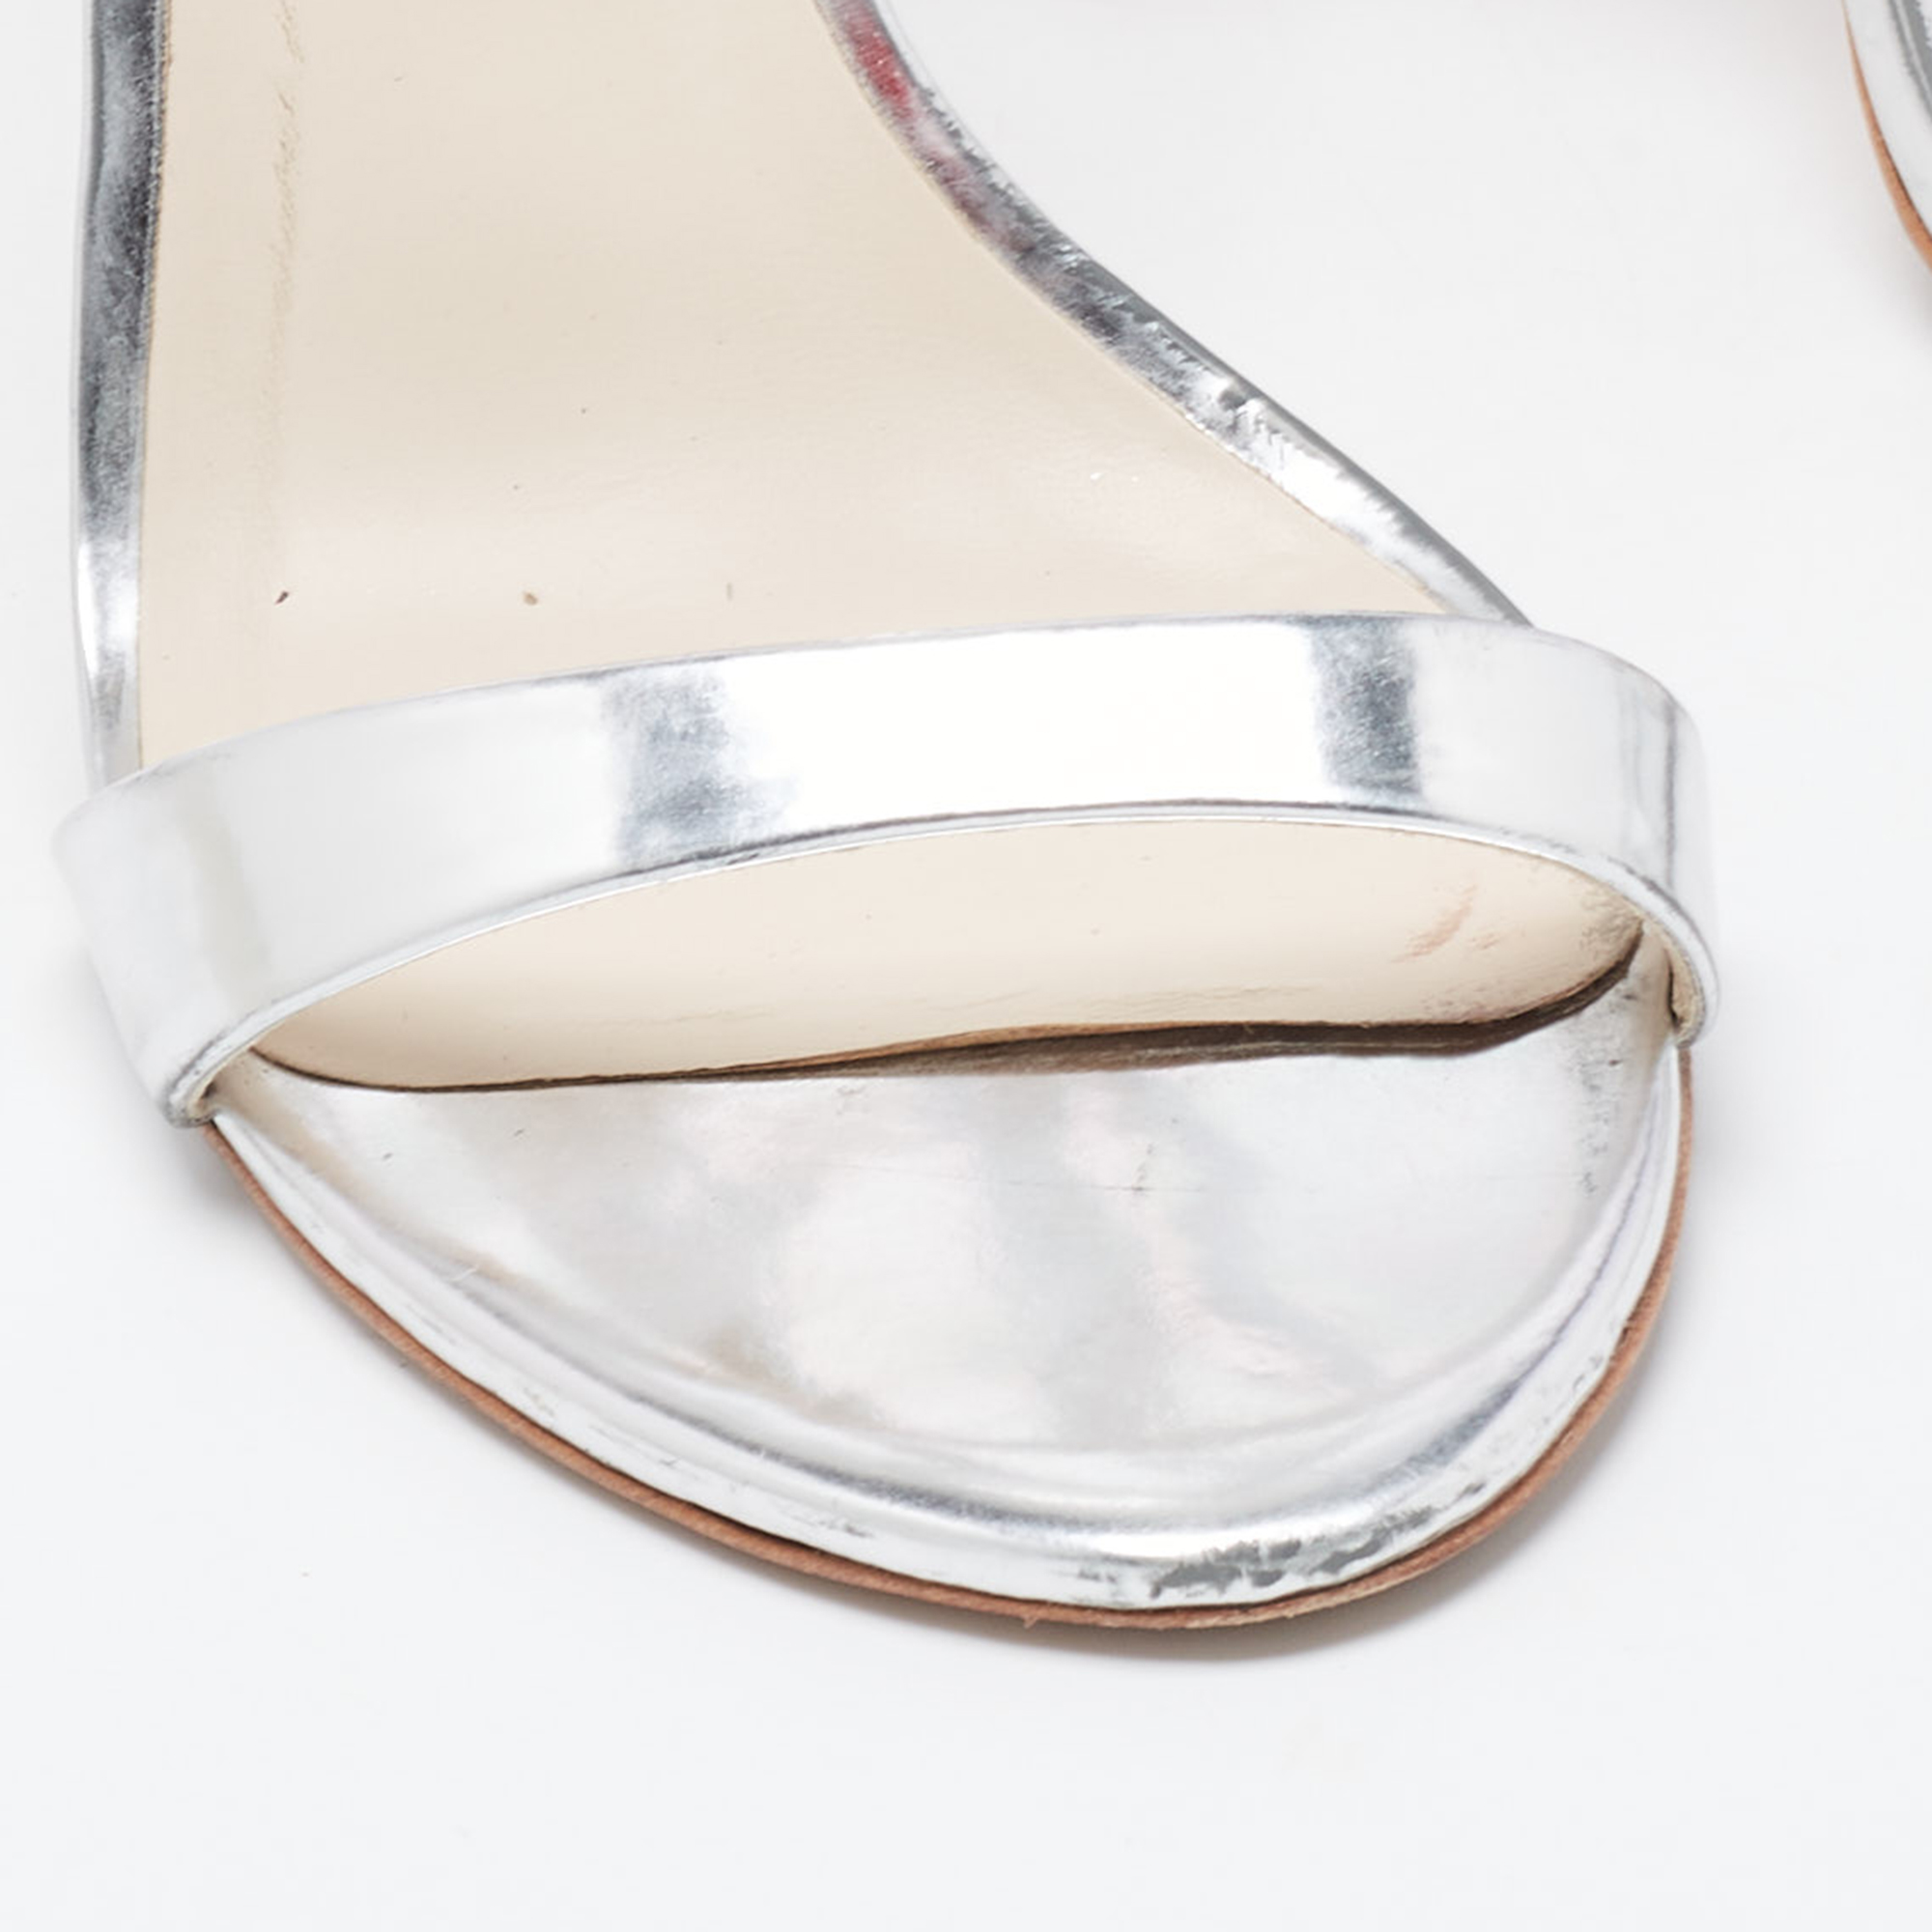 Sophia Webster Silver Patent Rosalind Ankle Strap Sandals Size 38.5